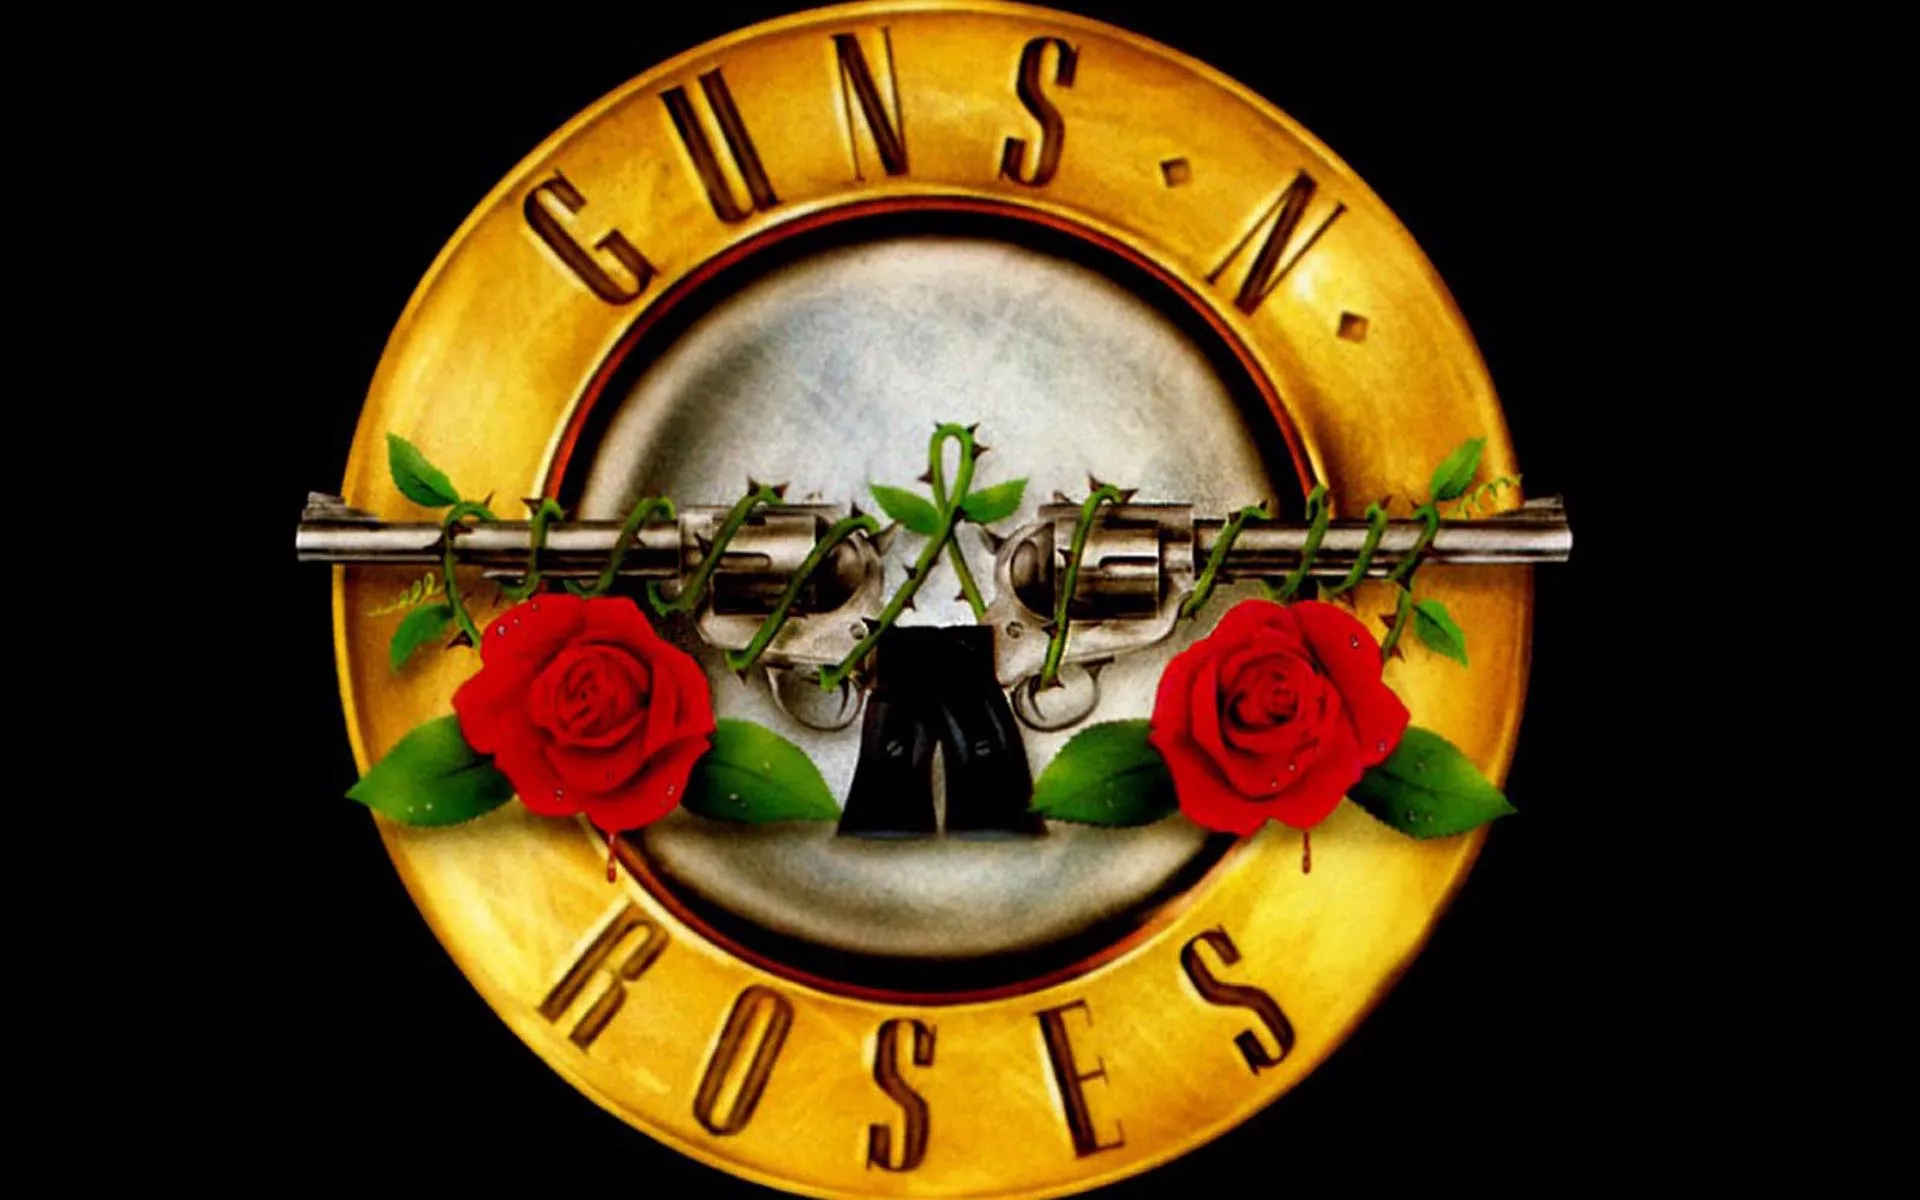 De öppnar för Guns N' Roses i Sverige – 2 band klara